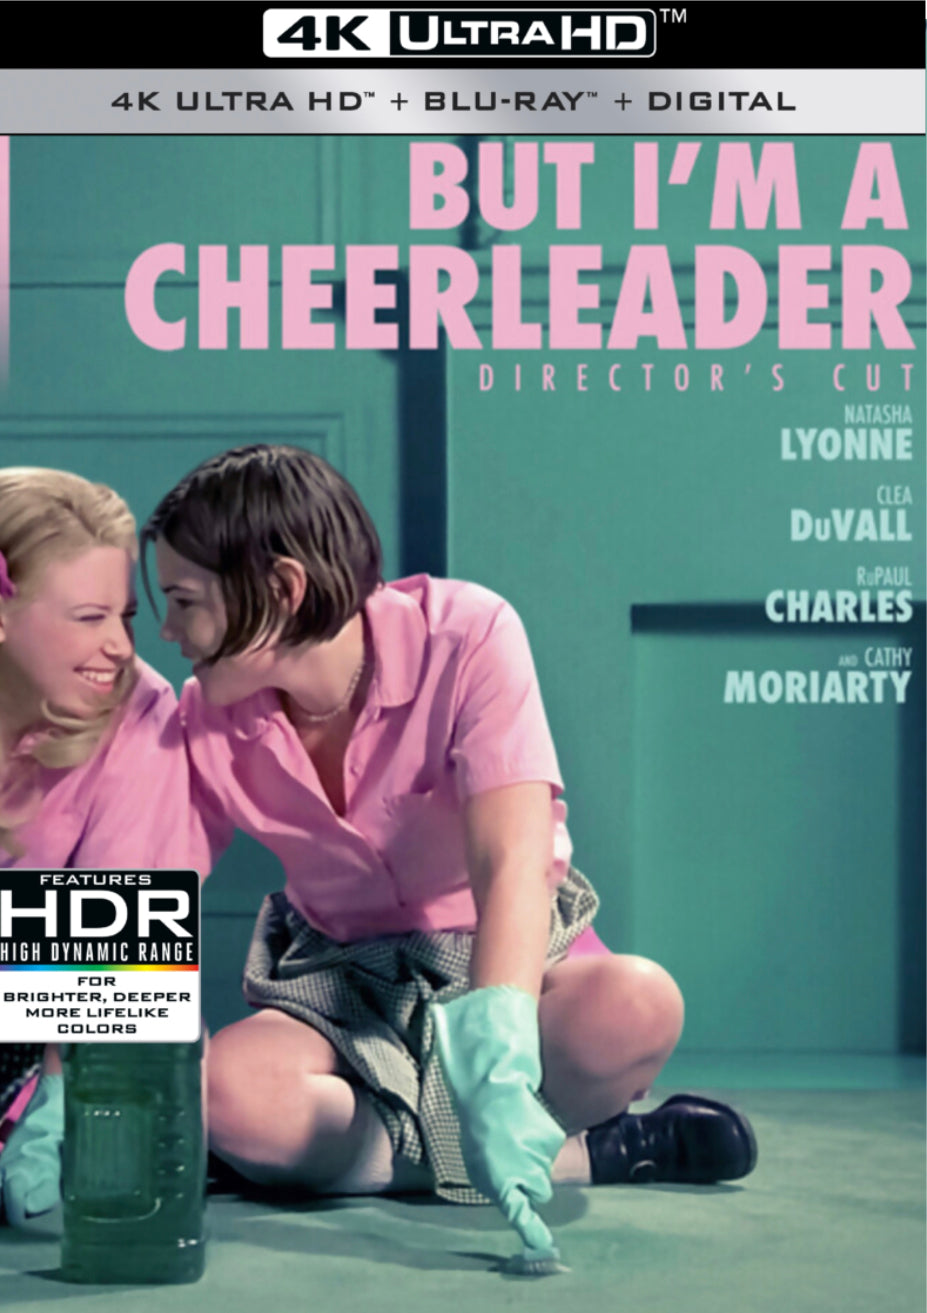 But I'm A Cheerleader [Director's Cut] (2000) Vudu 4K or iTunes 4K code